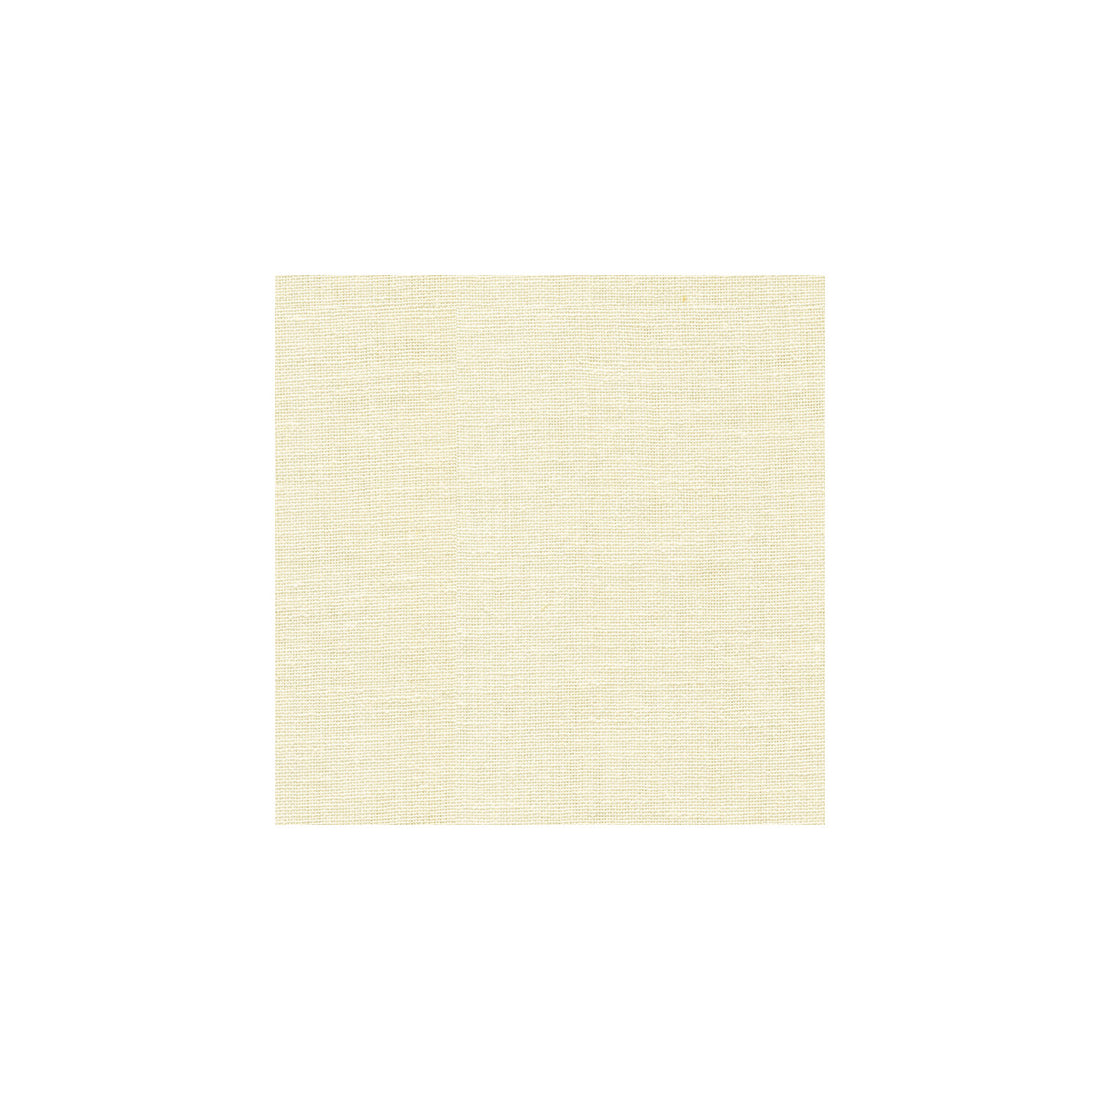 Kravet Basics fabric in 9934-1 color - pattern 9934.1.0 - by Kravet Basics